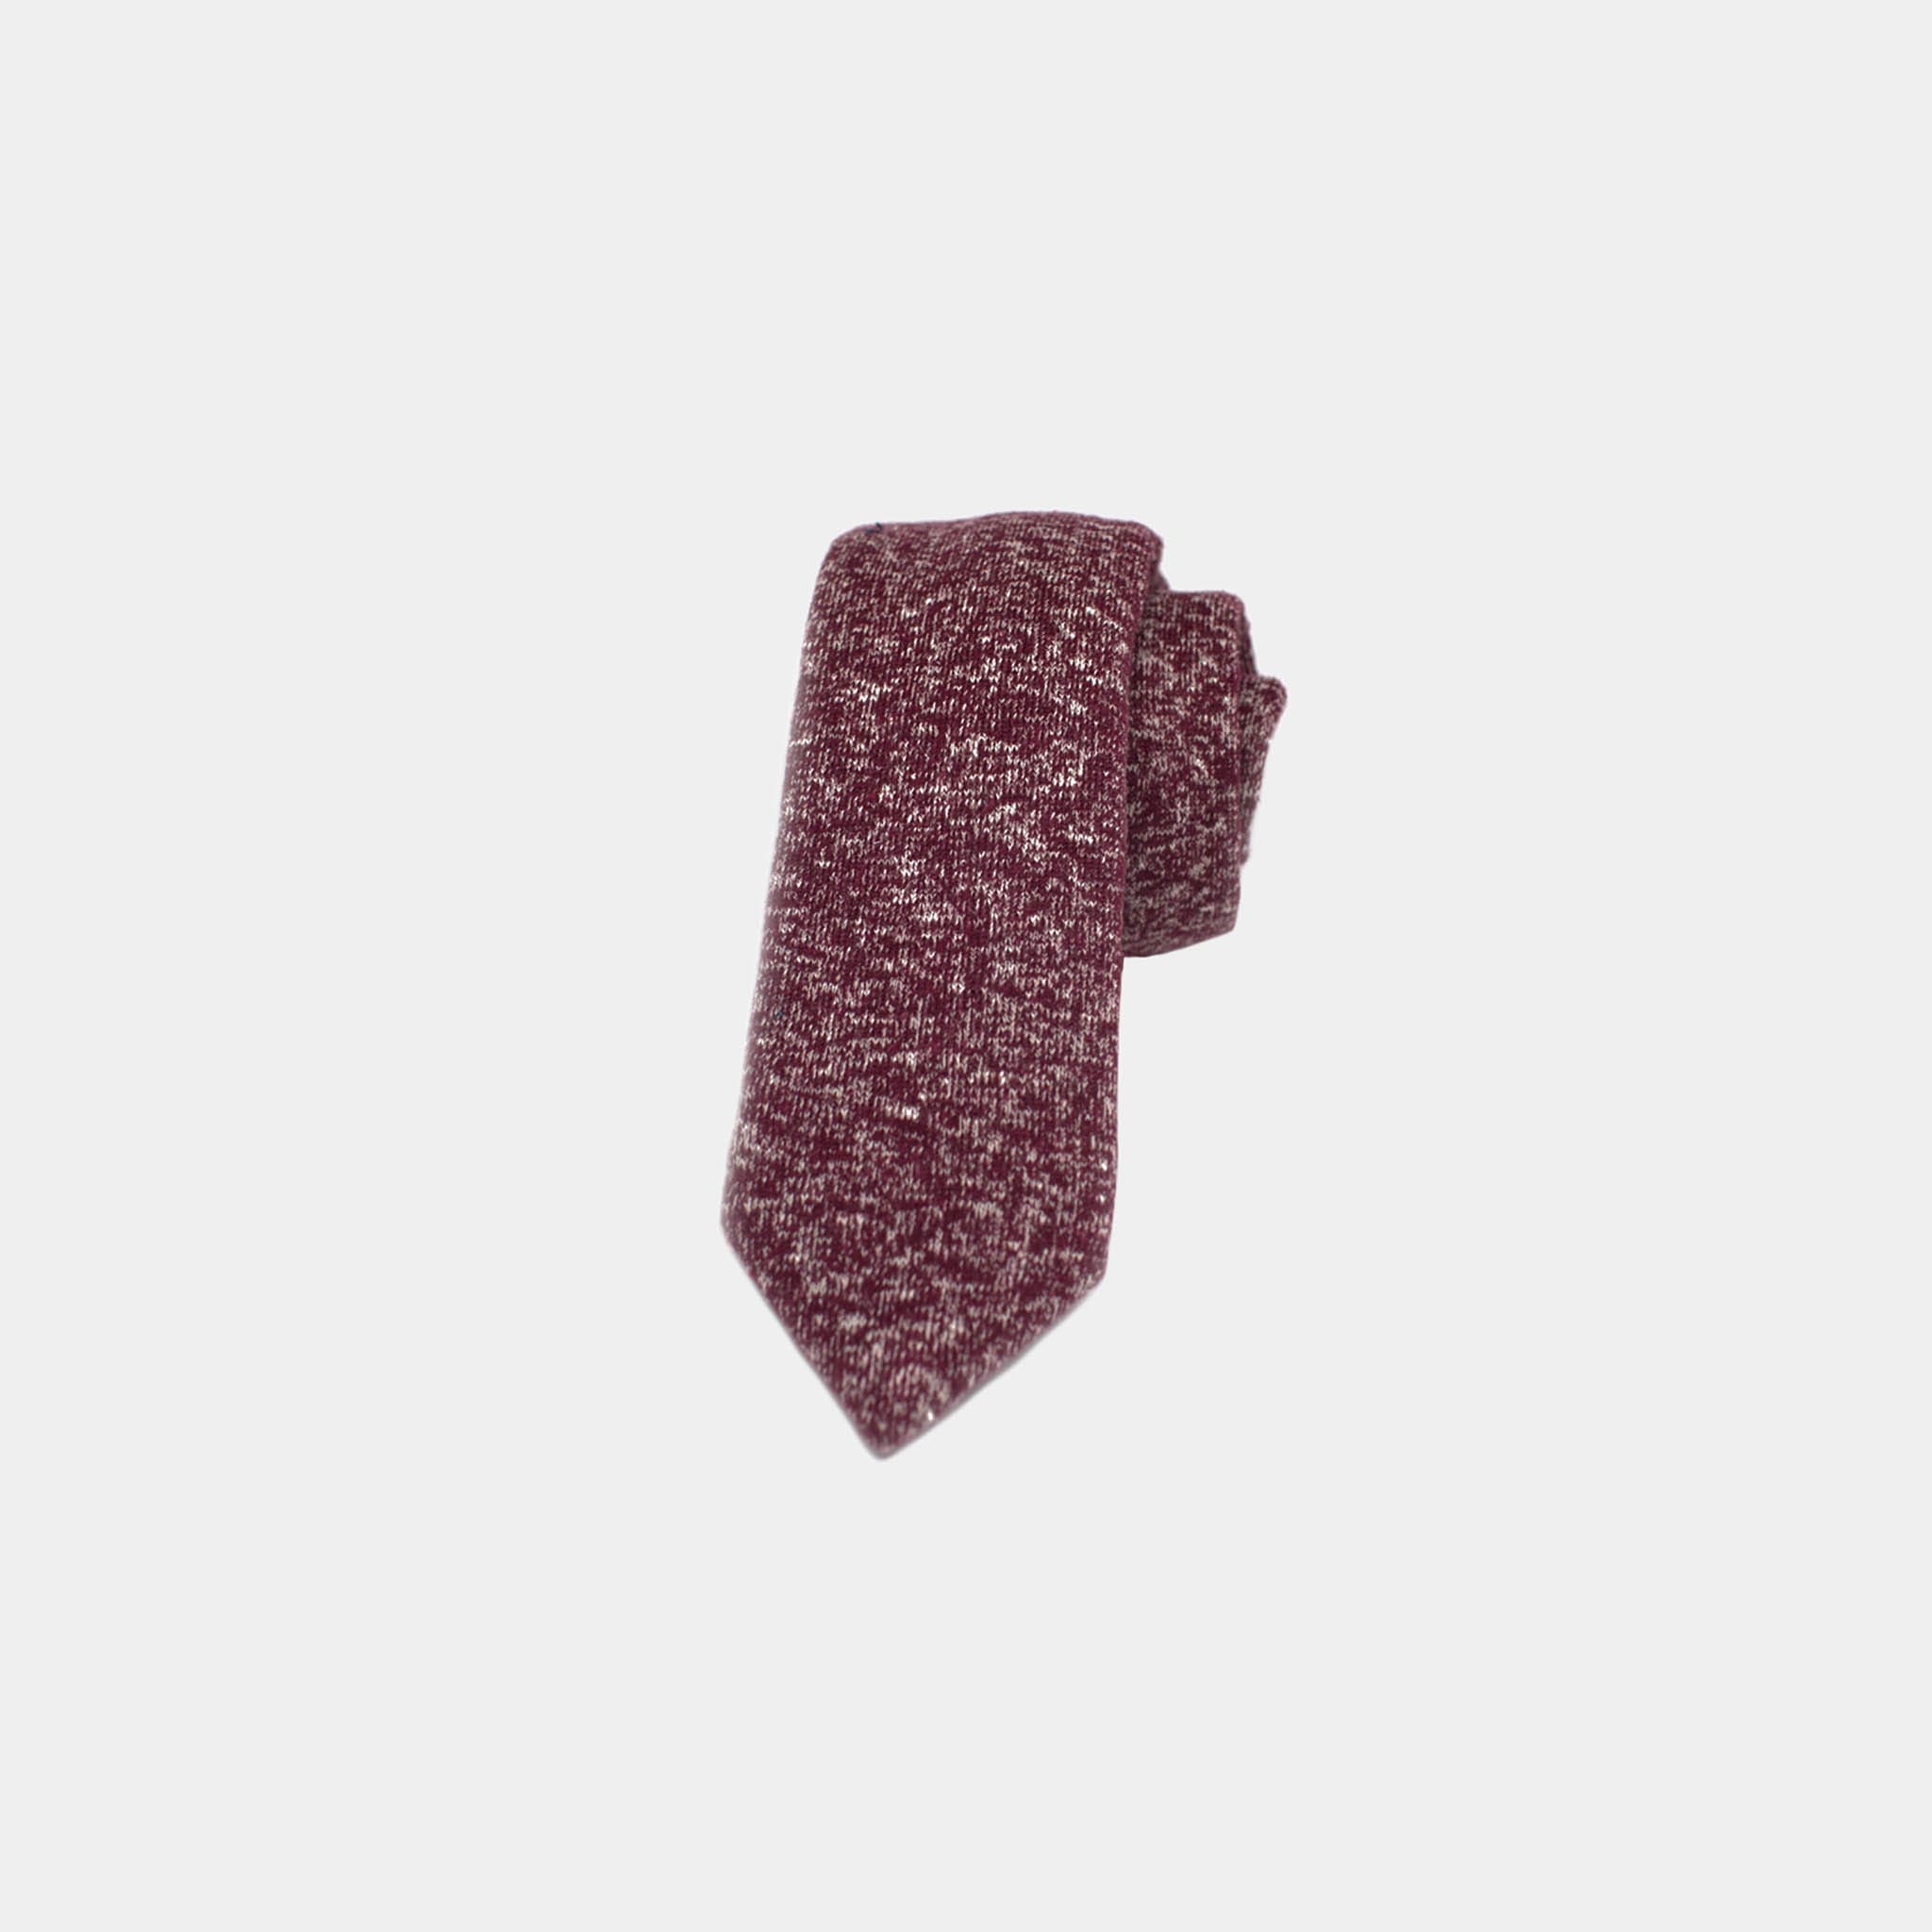 Speckled Necktie